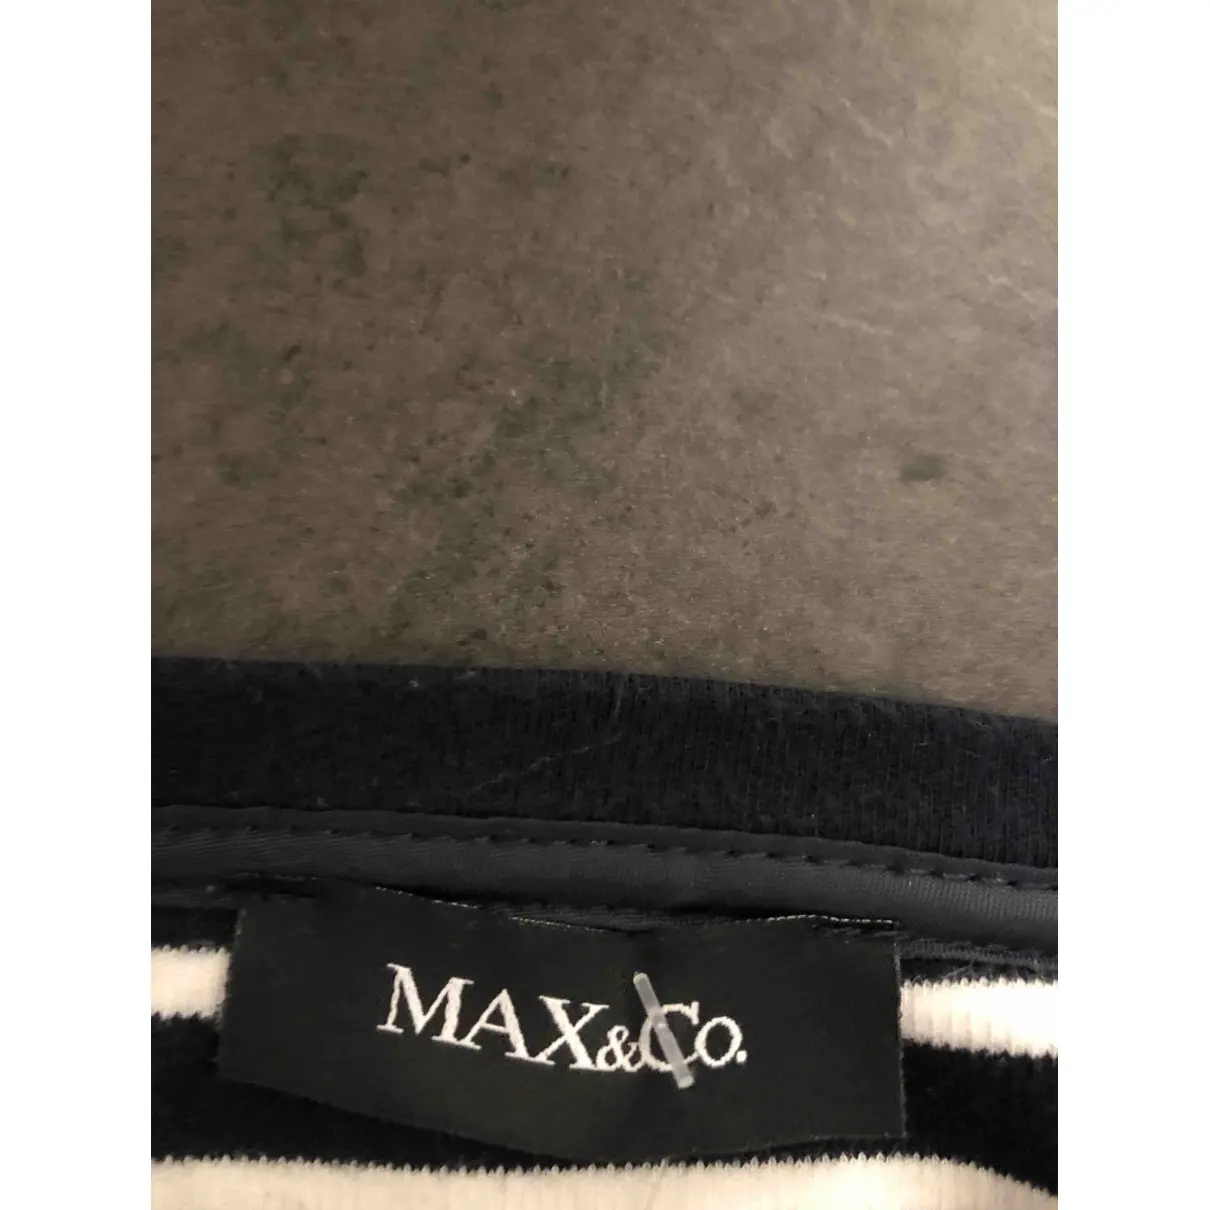 Buy Max & Co Knitwear online